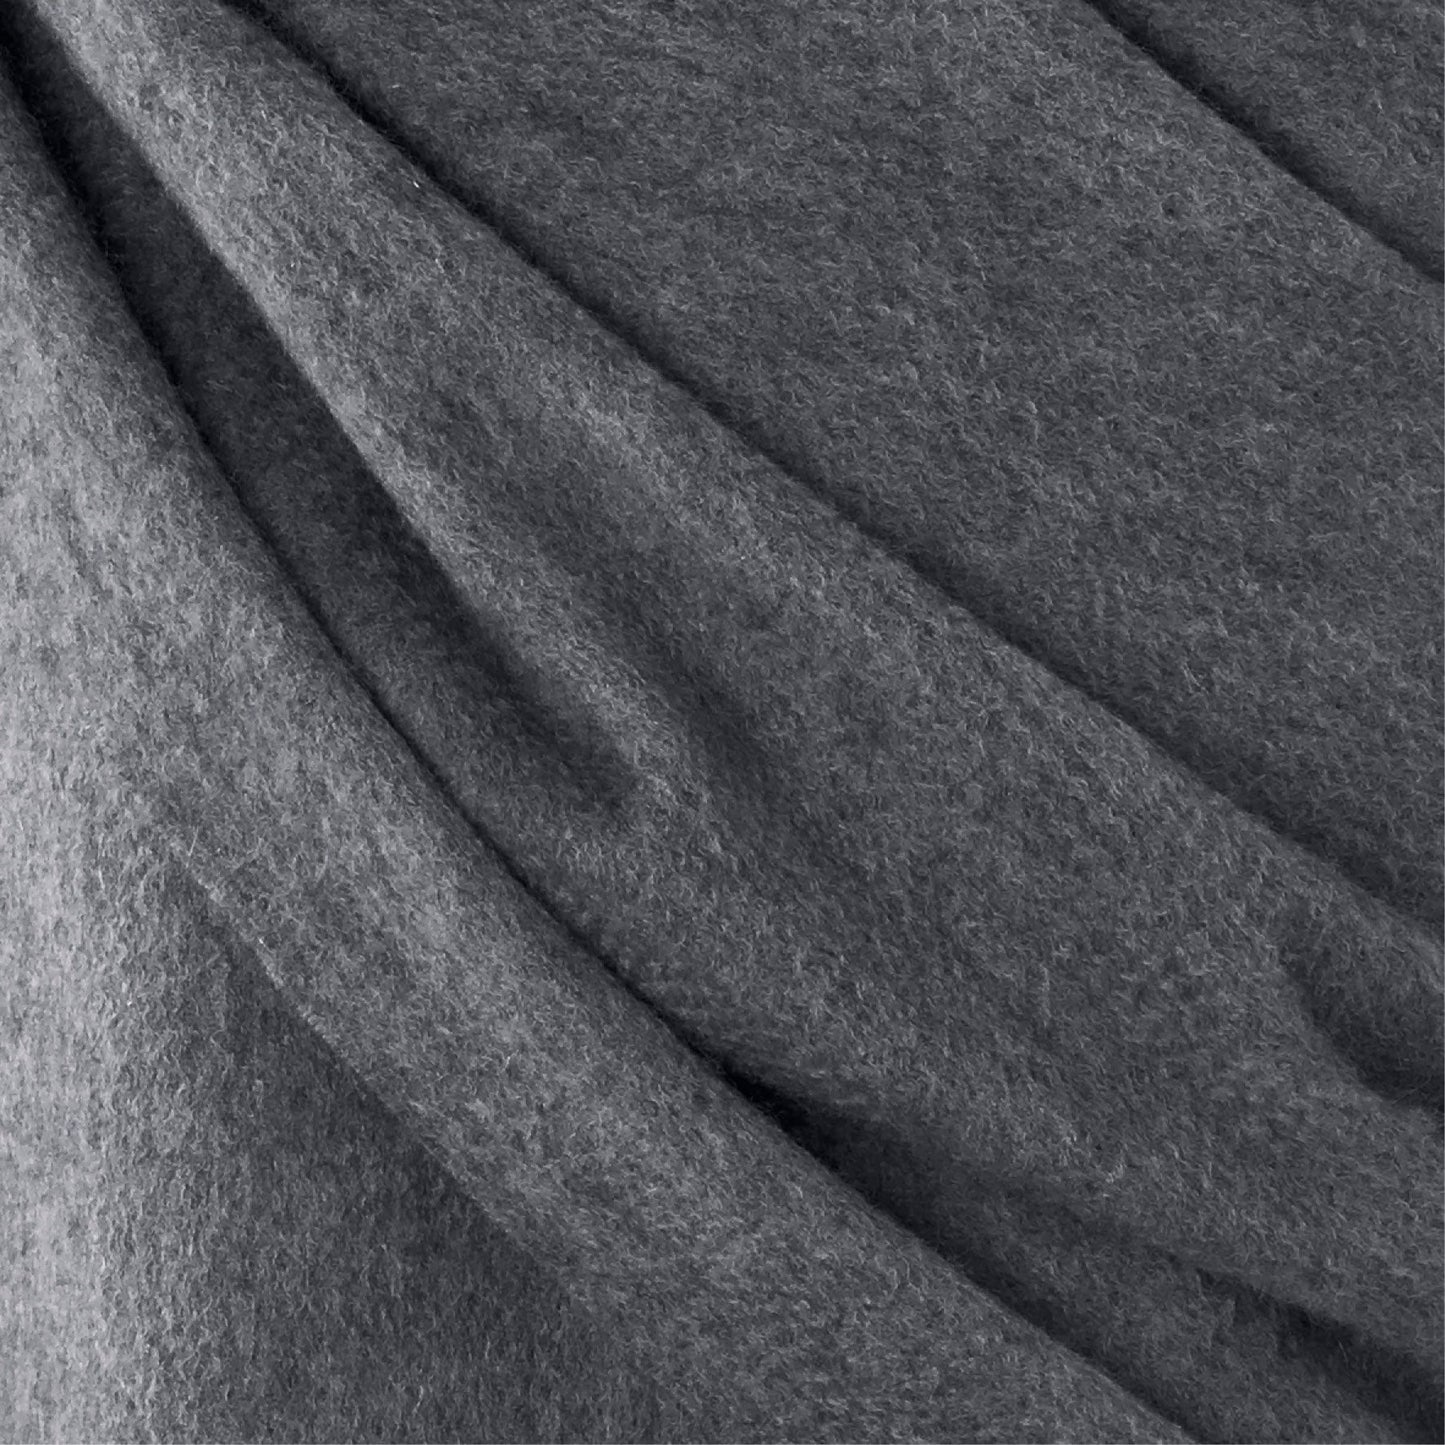 Mittens cashmere - Grey